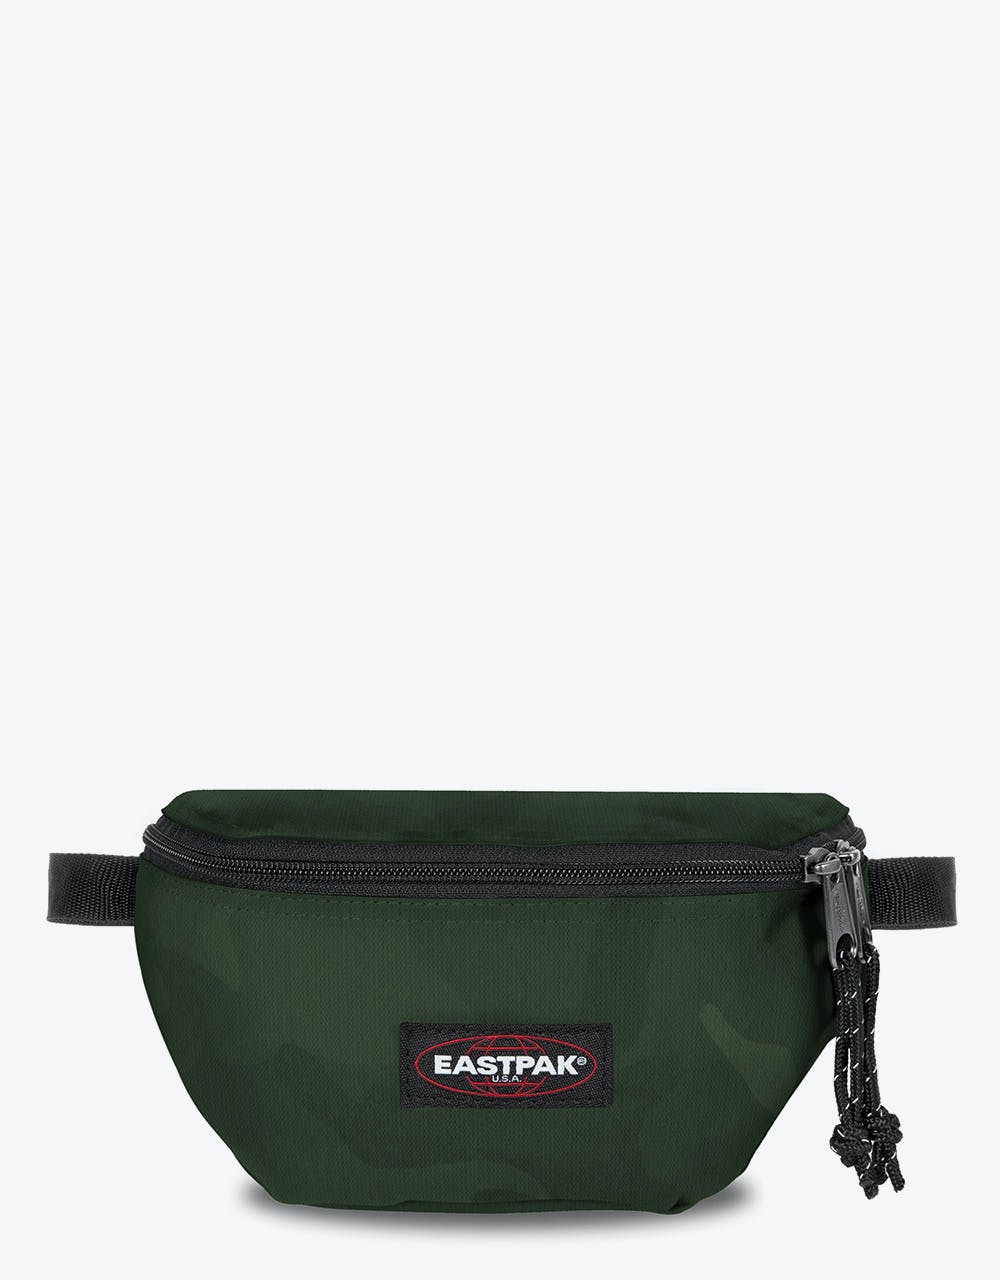 Eastpak Springer Cross Body Bag - Tonal Camo Khak